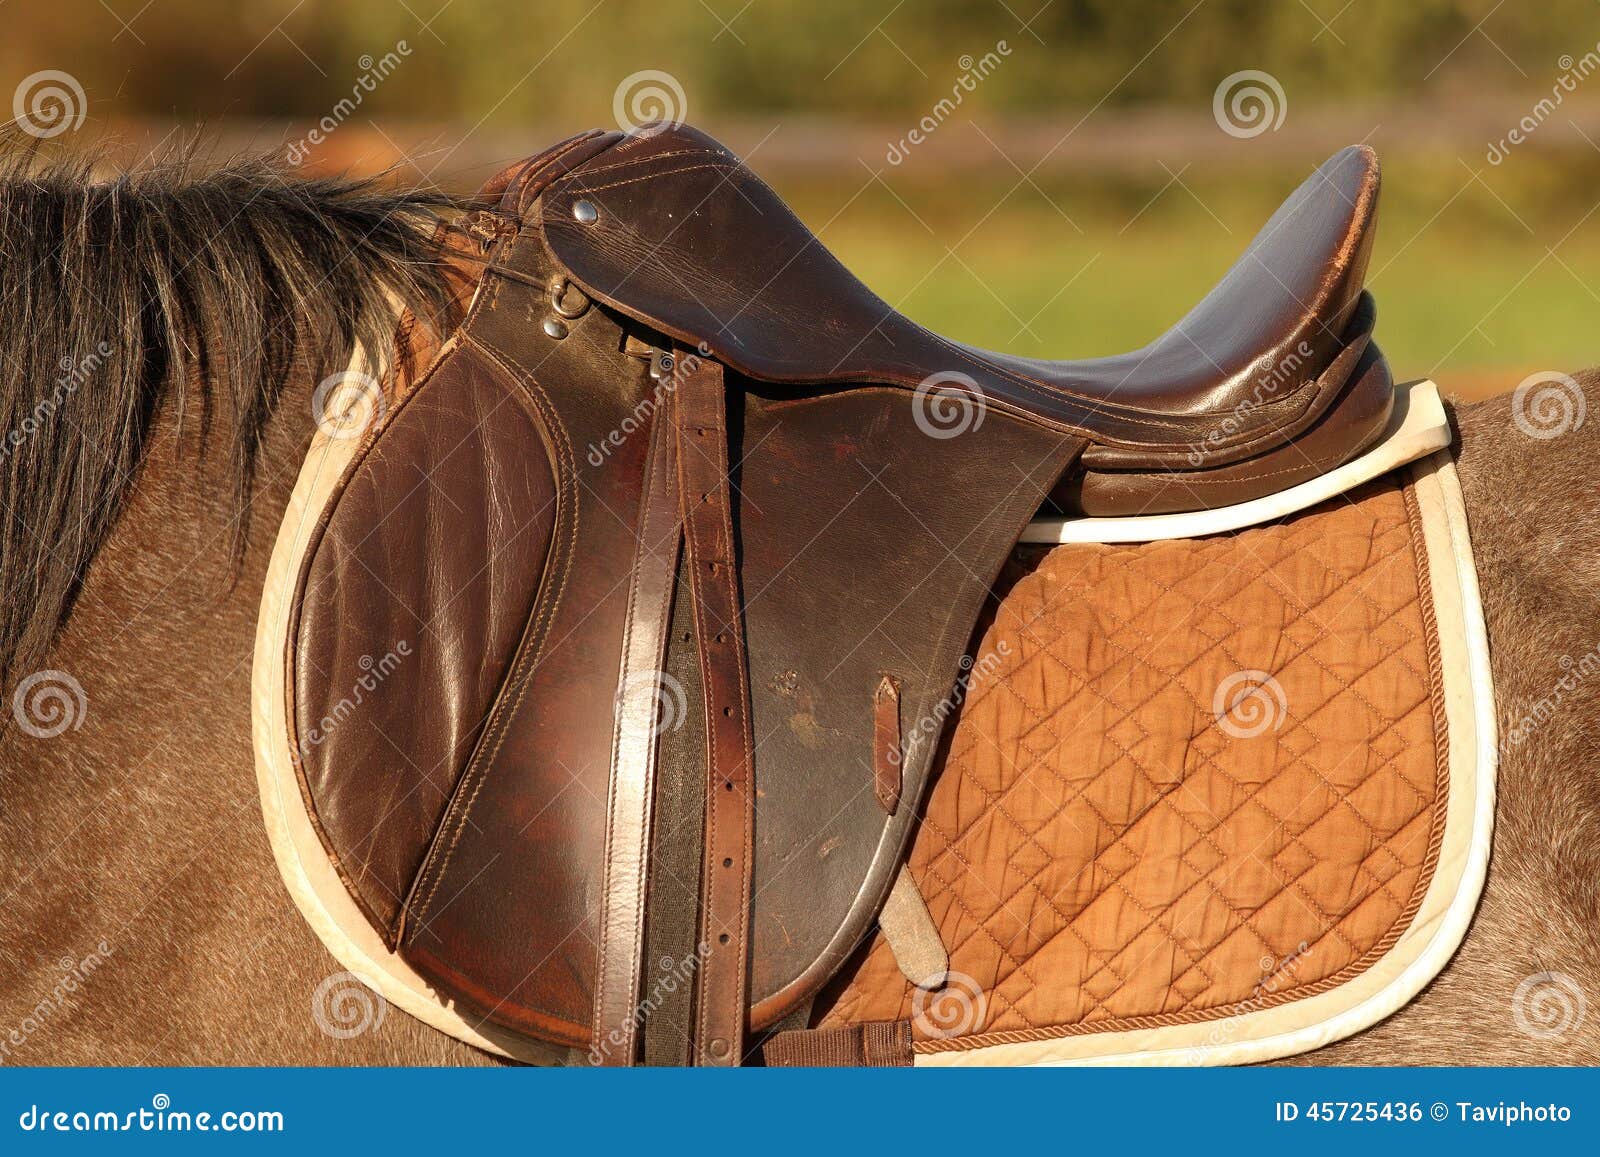 蒙品1选带你看蒙古族马背文化——雕花的马鞍！ - 知乎